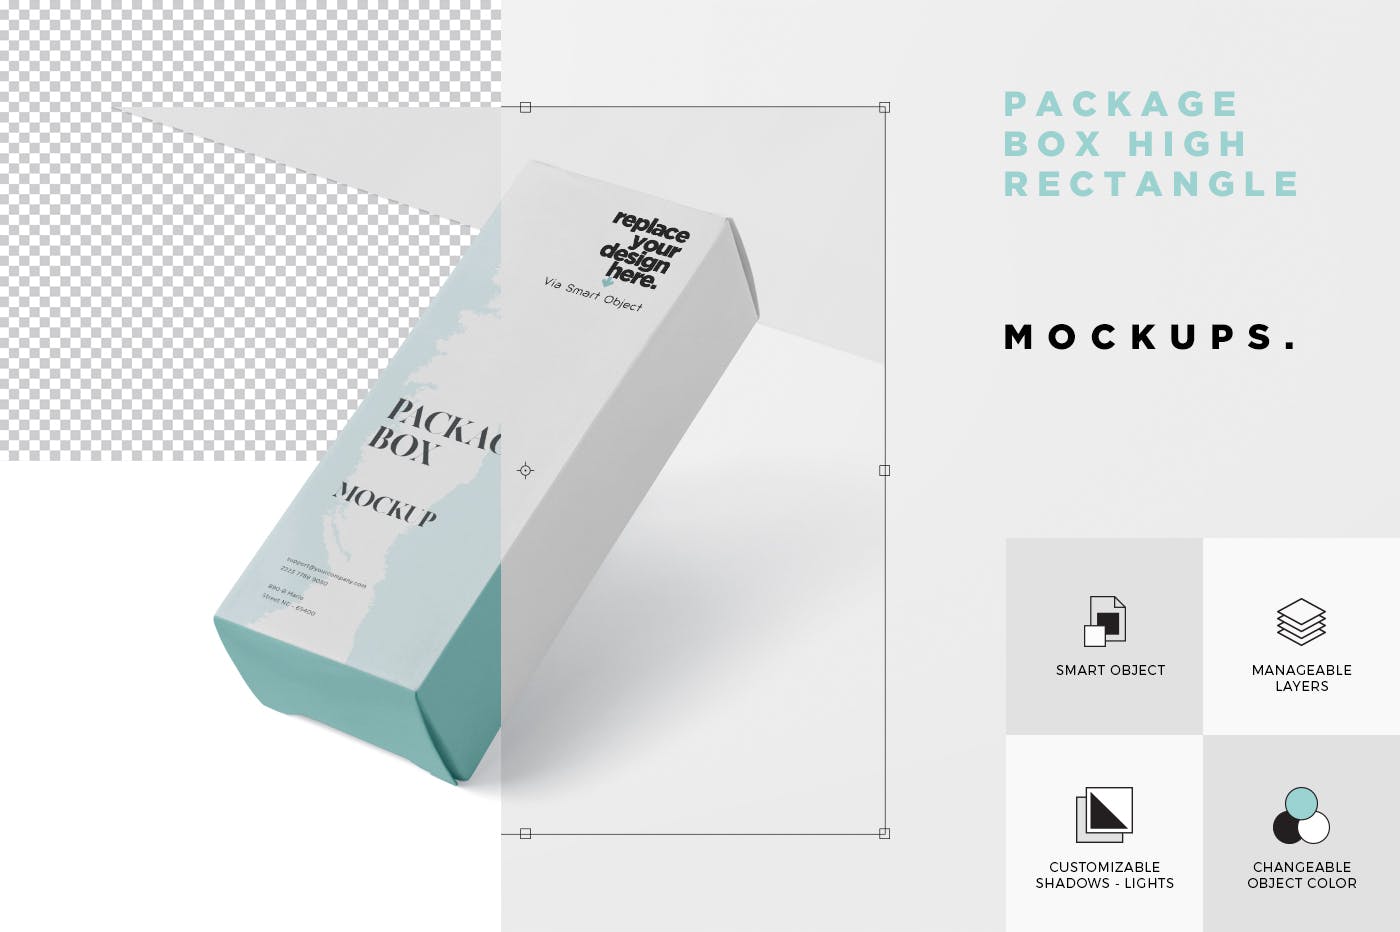 简约风多用途产品包装纸盒设计效果图第一素材精选 Package Box Mock-Up – High Rectangle Shape插图(5)